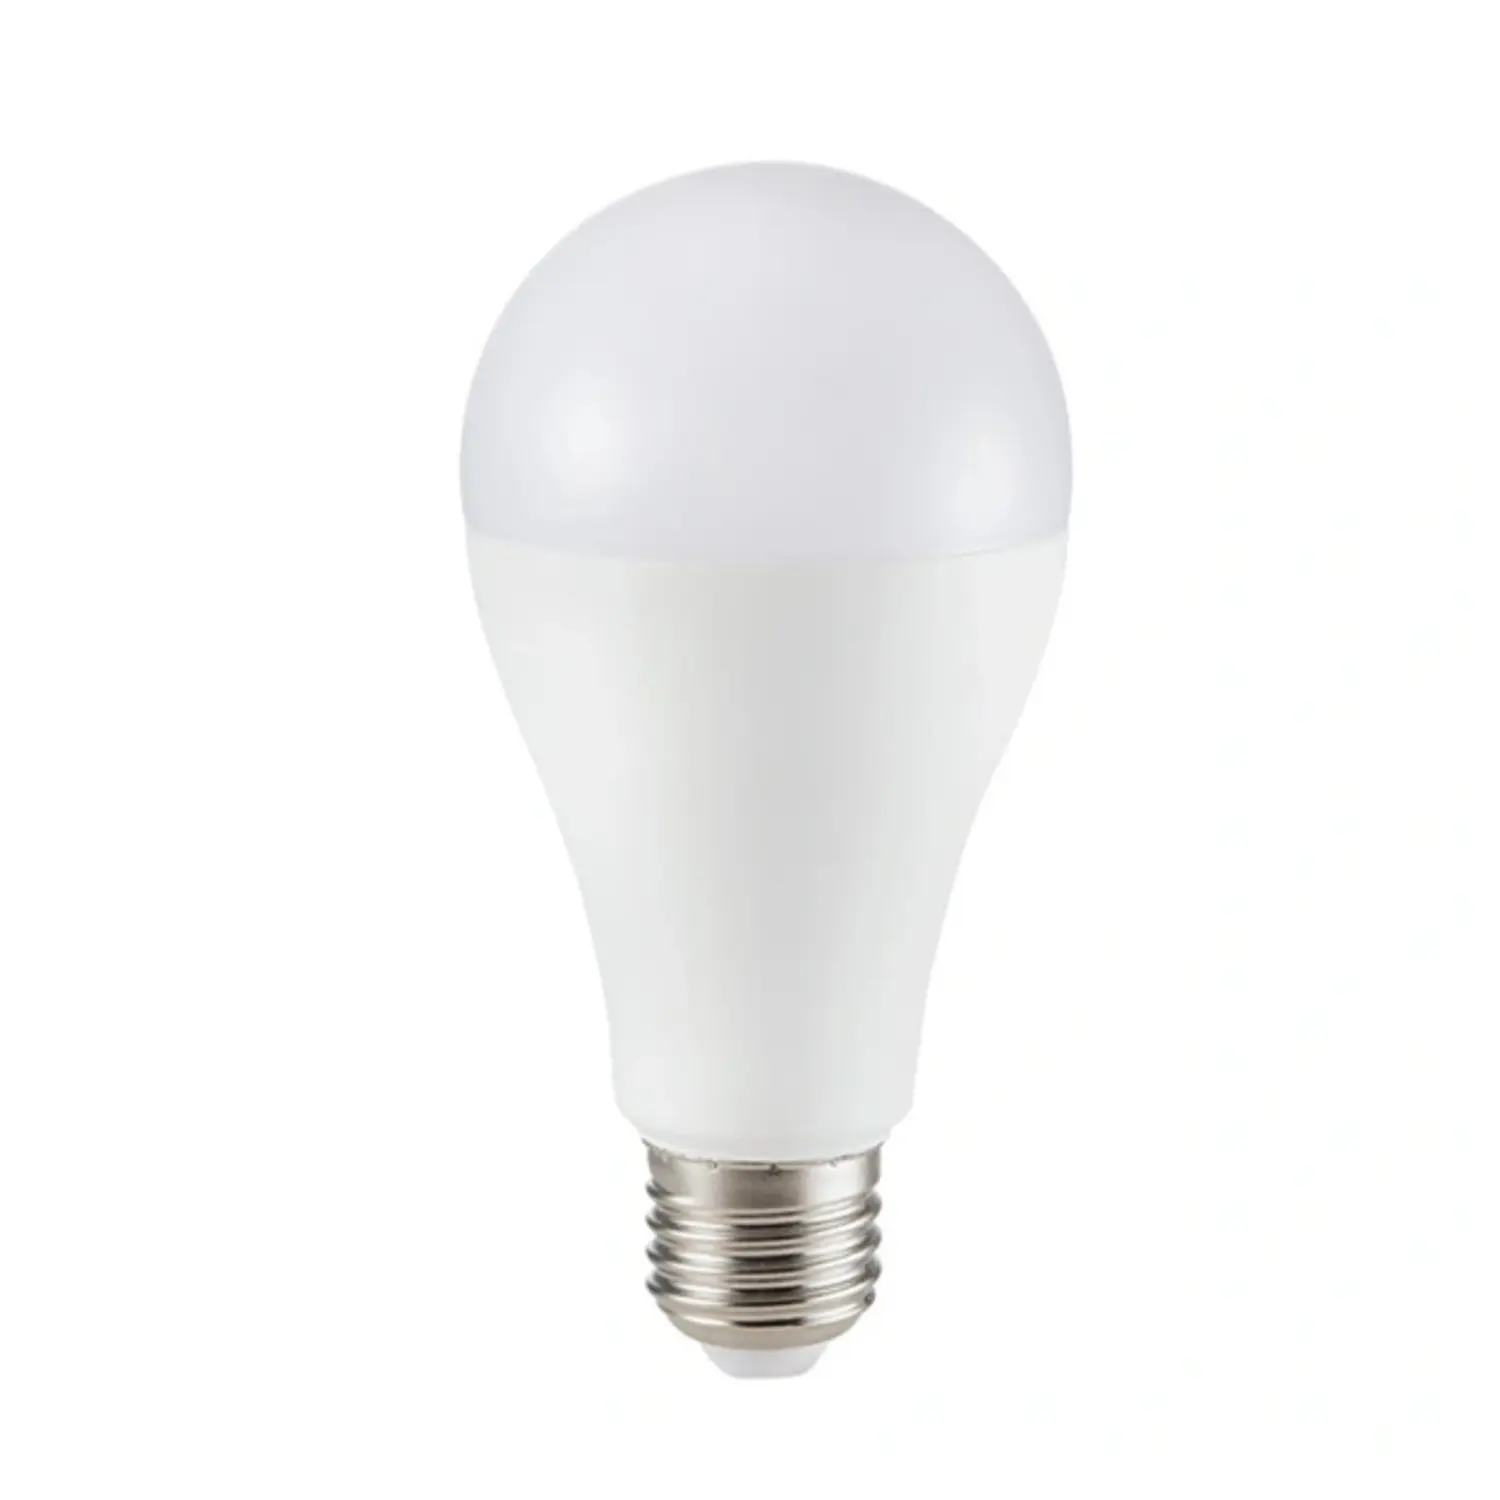 immagine del prodotto lampadina led bulbo chip samsung A65 e27 17 watt bianco naturale